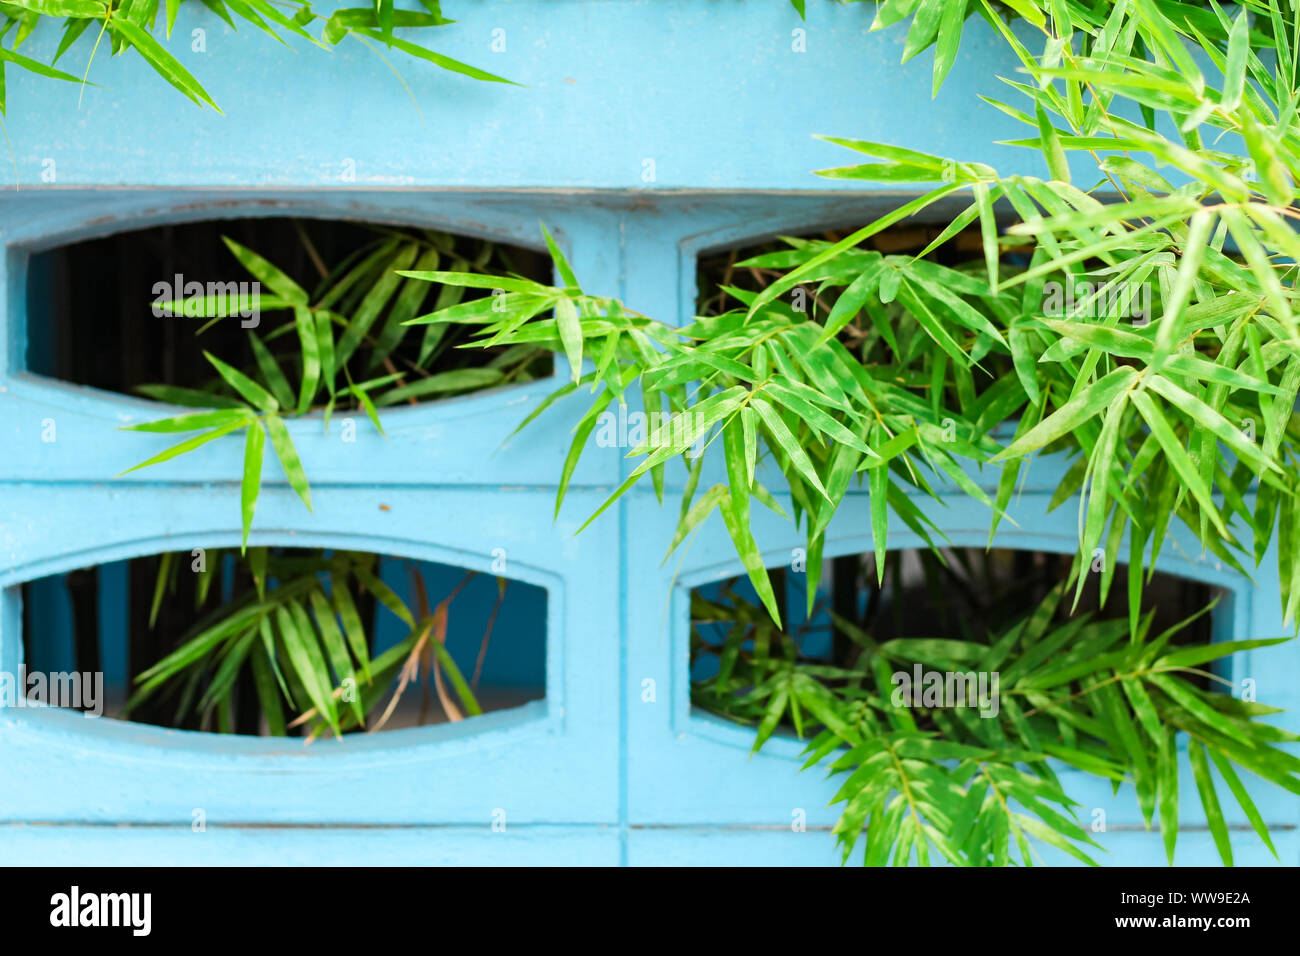 Grüne Bambusblätter vor einer hellblau gefärbten Wand, die einen kontrastierenden Hintergrund der Frühlingssaison bietet Stockfoto